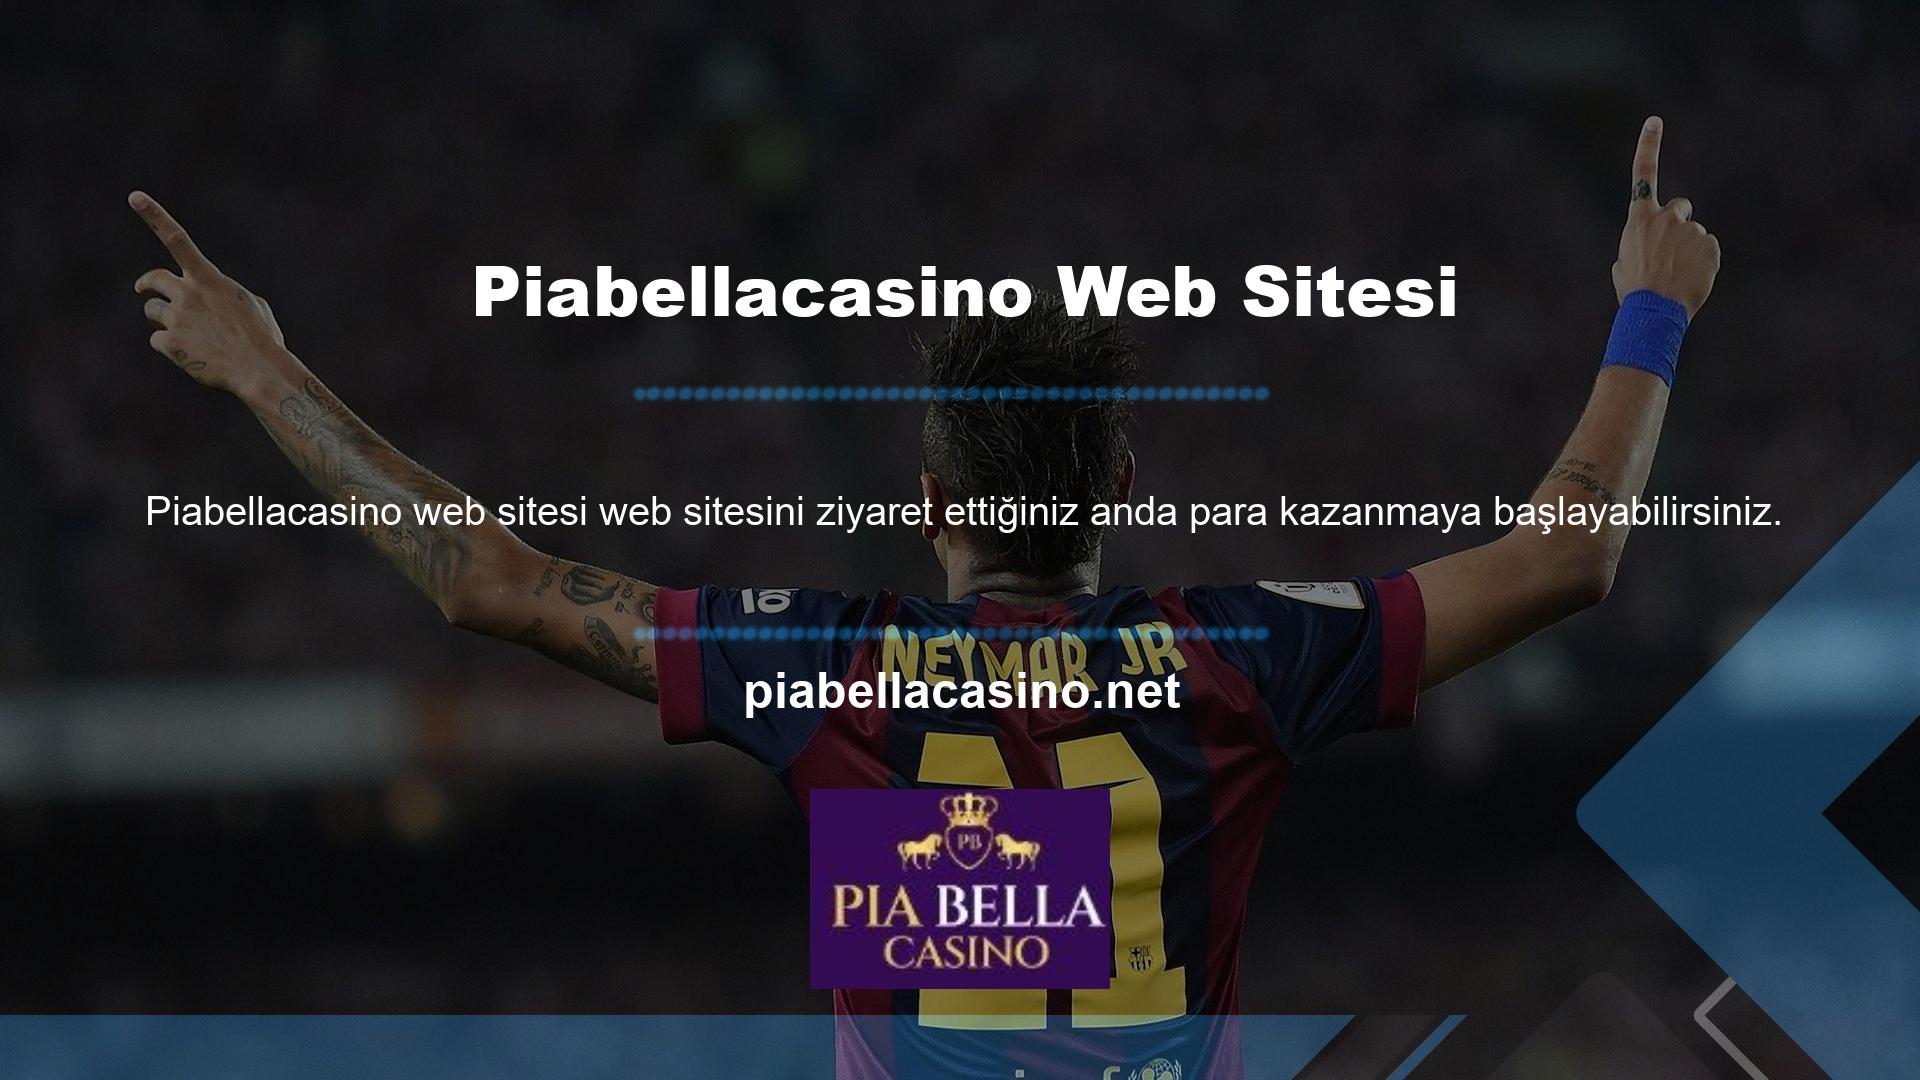 Web sitesi Piabellacasino için güncellenmiş olup bu adres üzerinden üyelere hizmet vermeye devam etmektedir